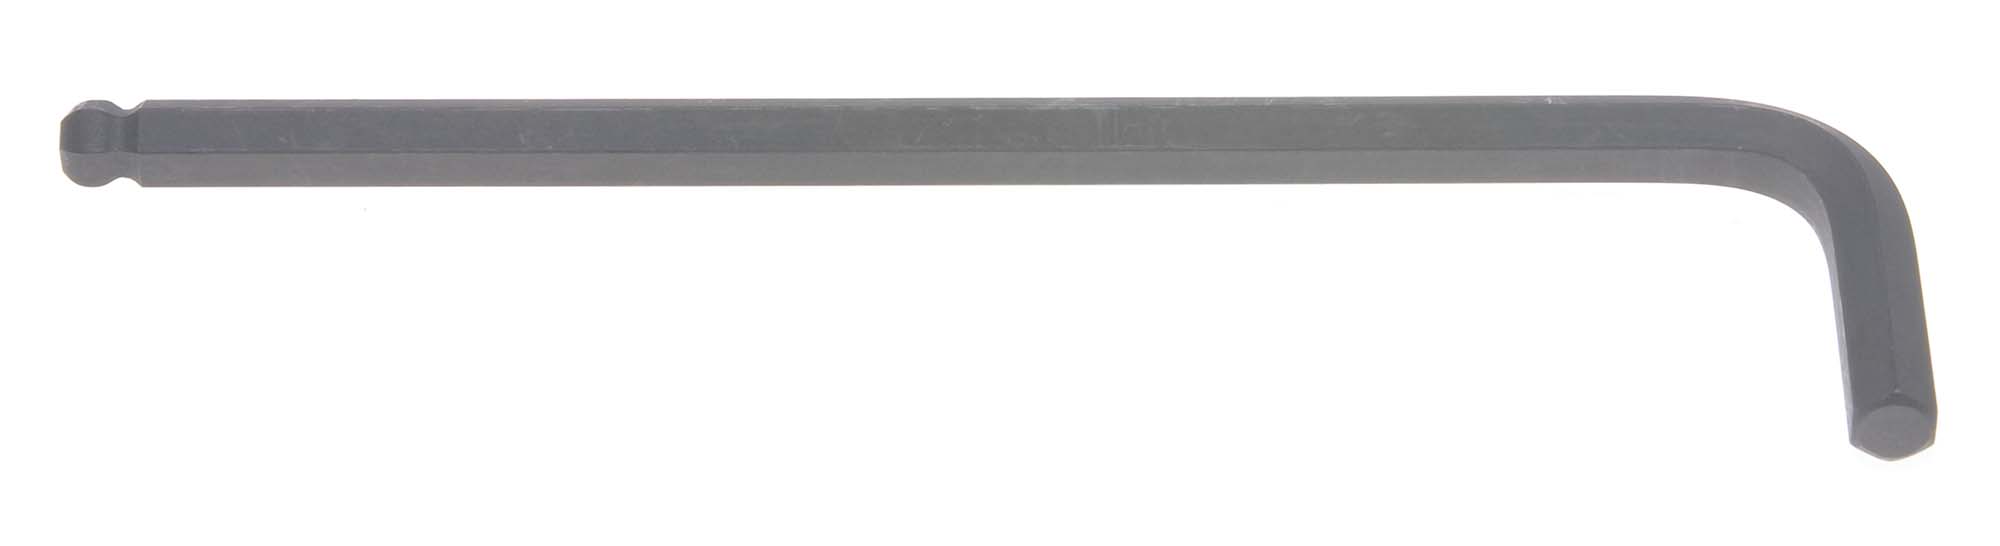 Bondhus 10988 19mm Balldriver L-Wrench Hex Key